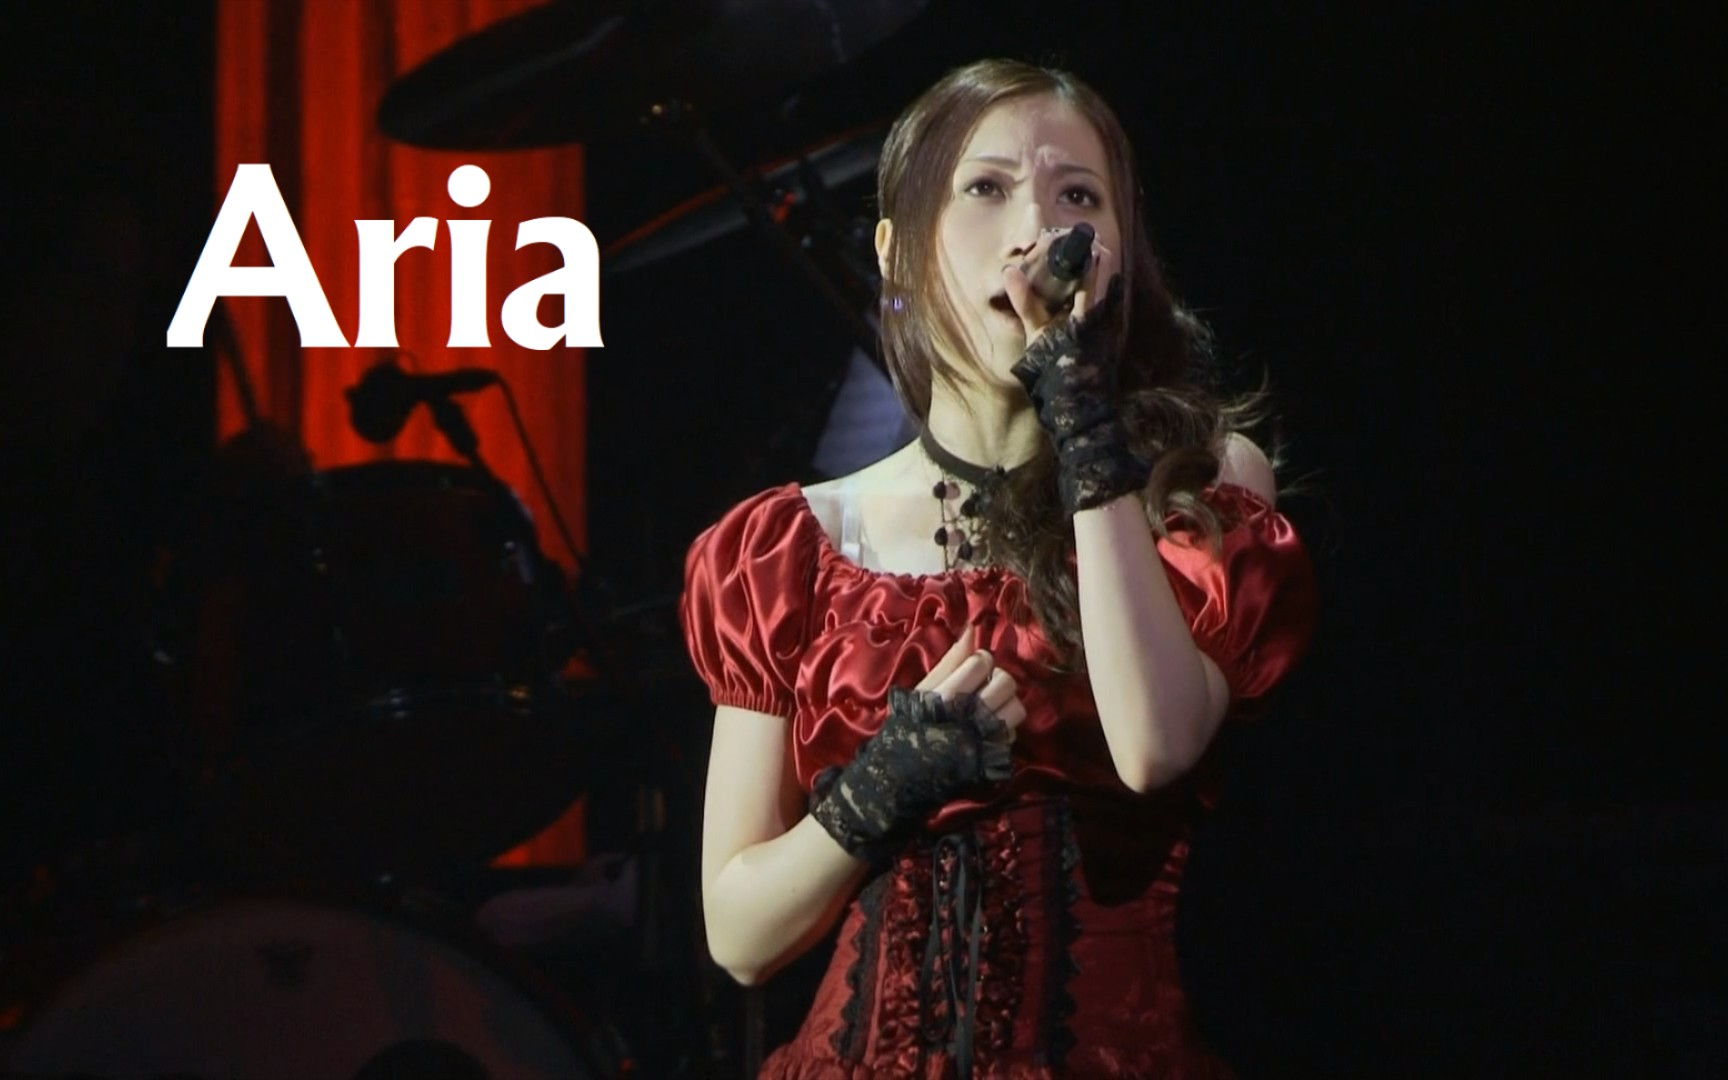 【Kalafina】Aria 超清LIVE版 中日字幕【Kalafina LIVE 2010 